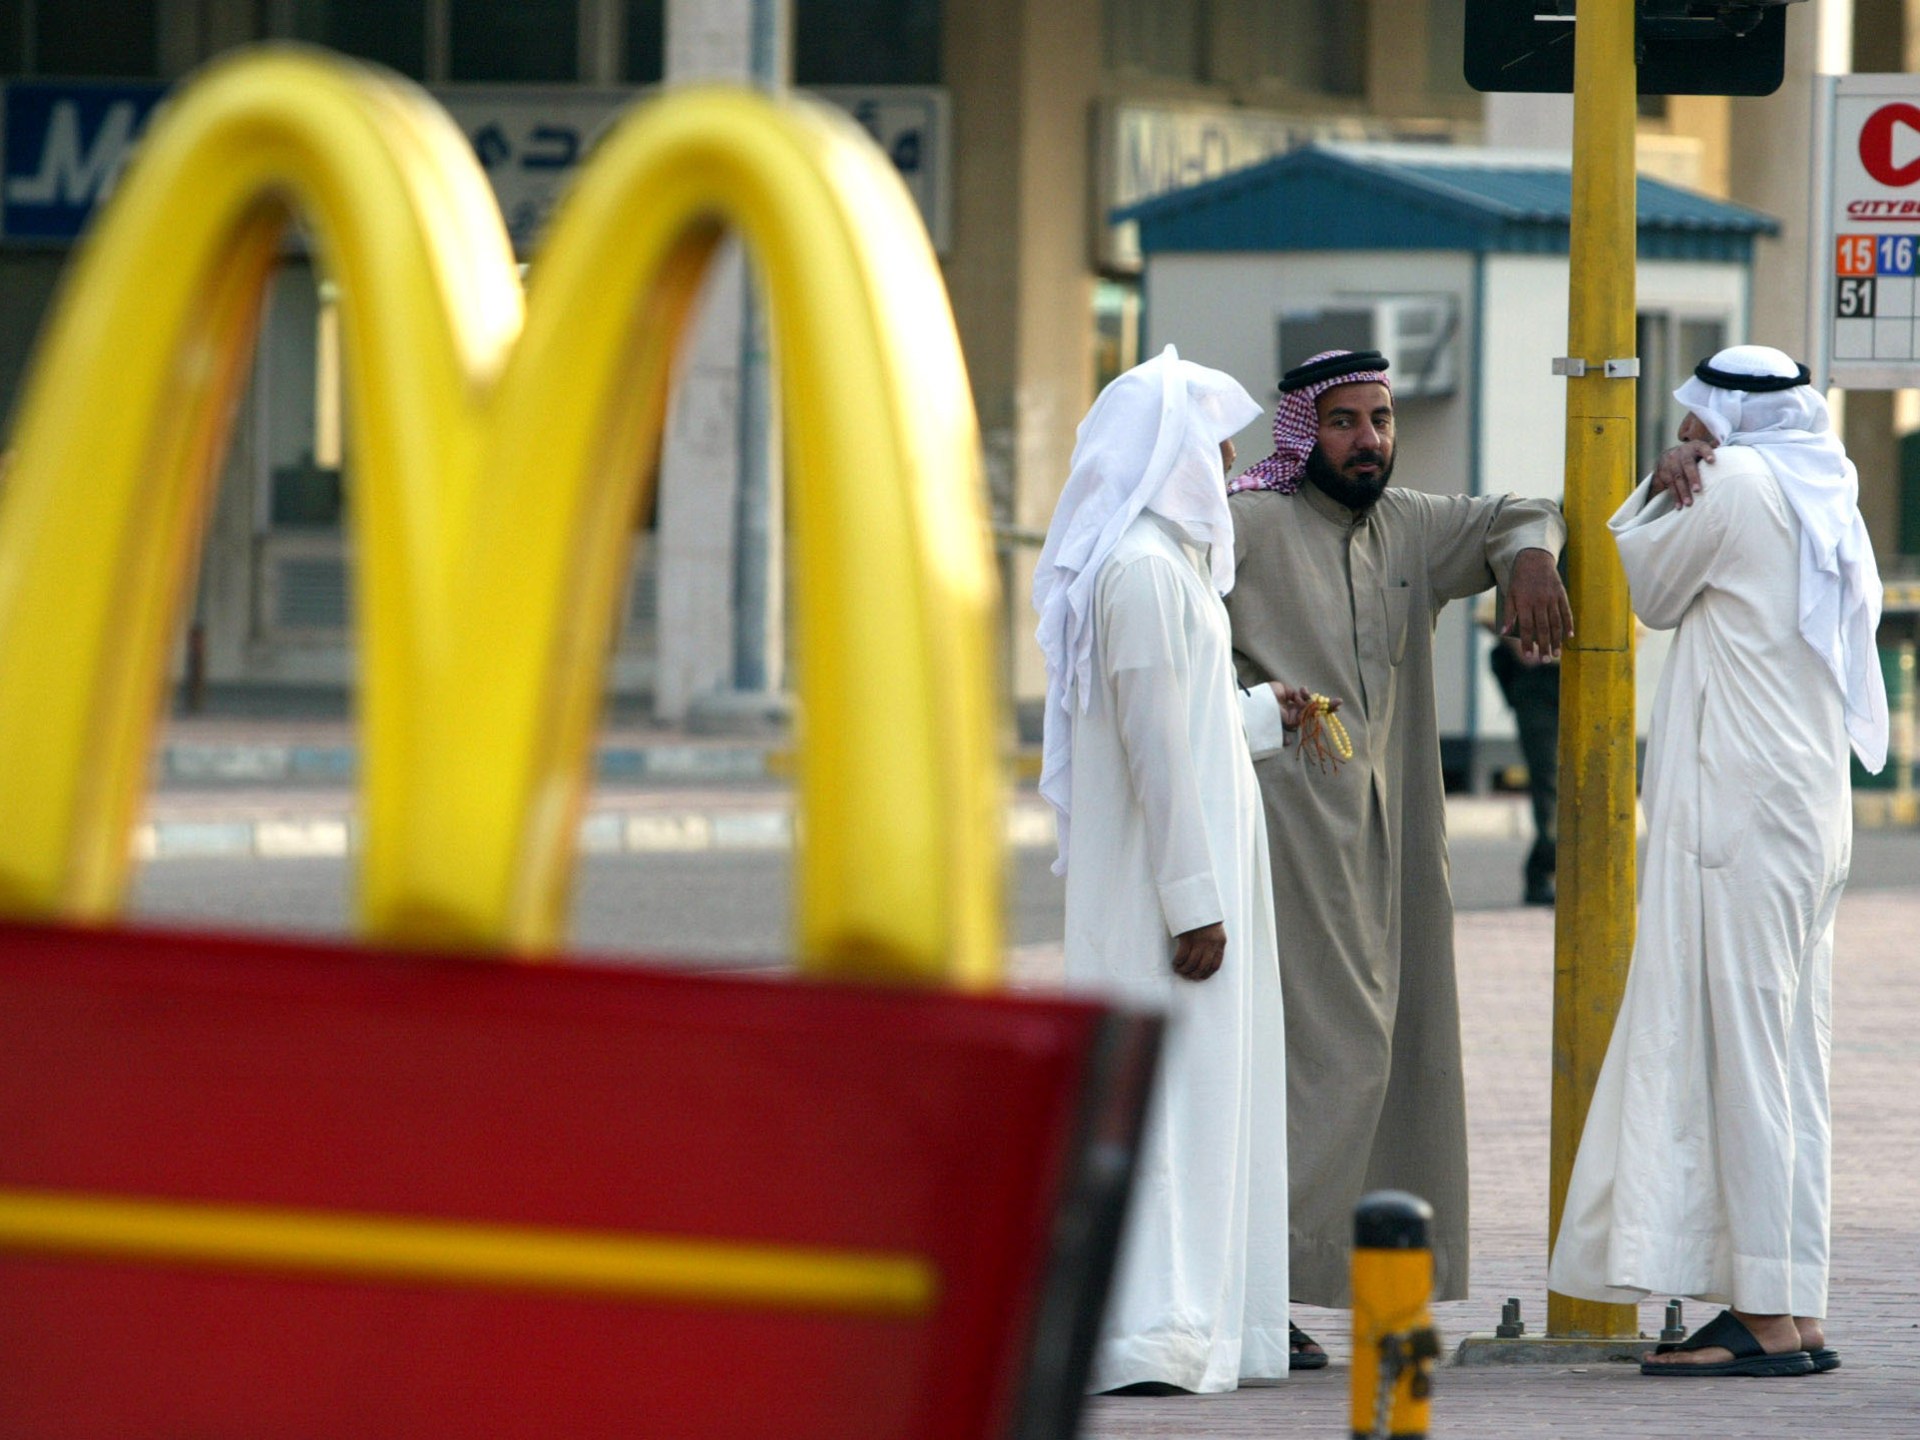 امتيازات ماكدونالدز في الشرق الأوسط في صراع بسبب الحرب بين إسرائيل وحماس  أخبار الطعام